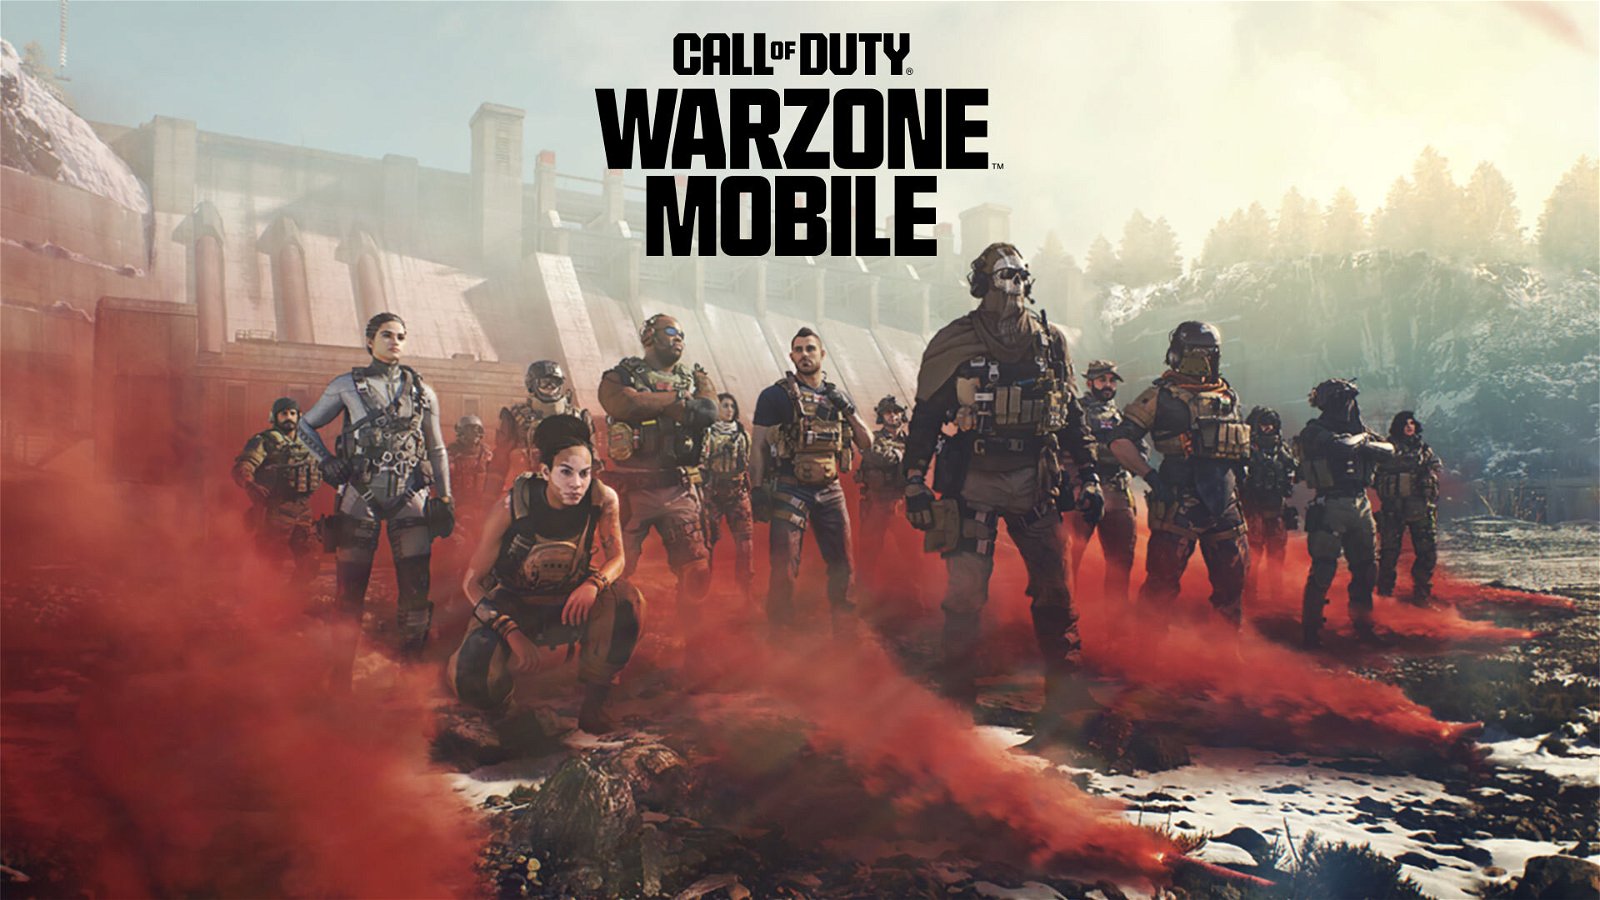 Call of Duty gratis da oggi, per tutti, su mobile